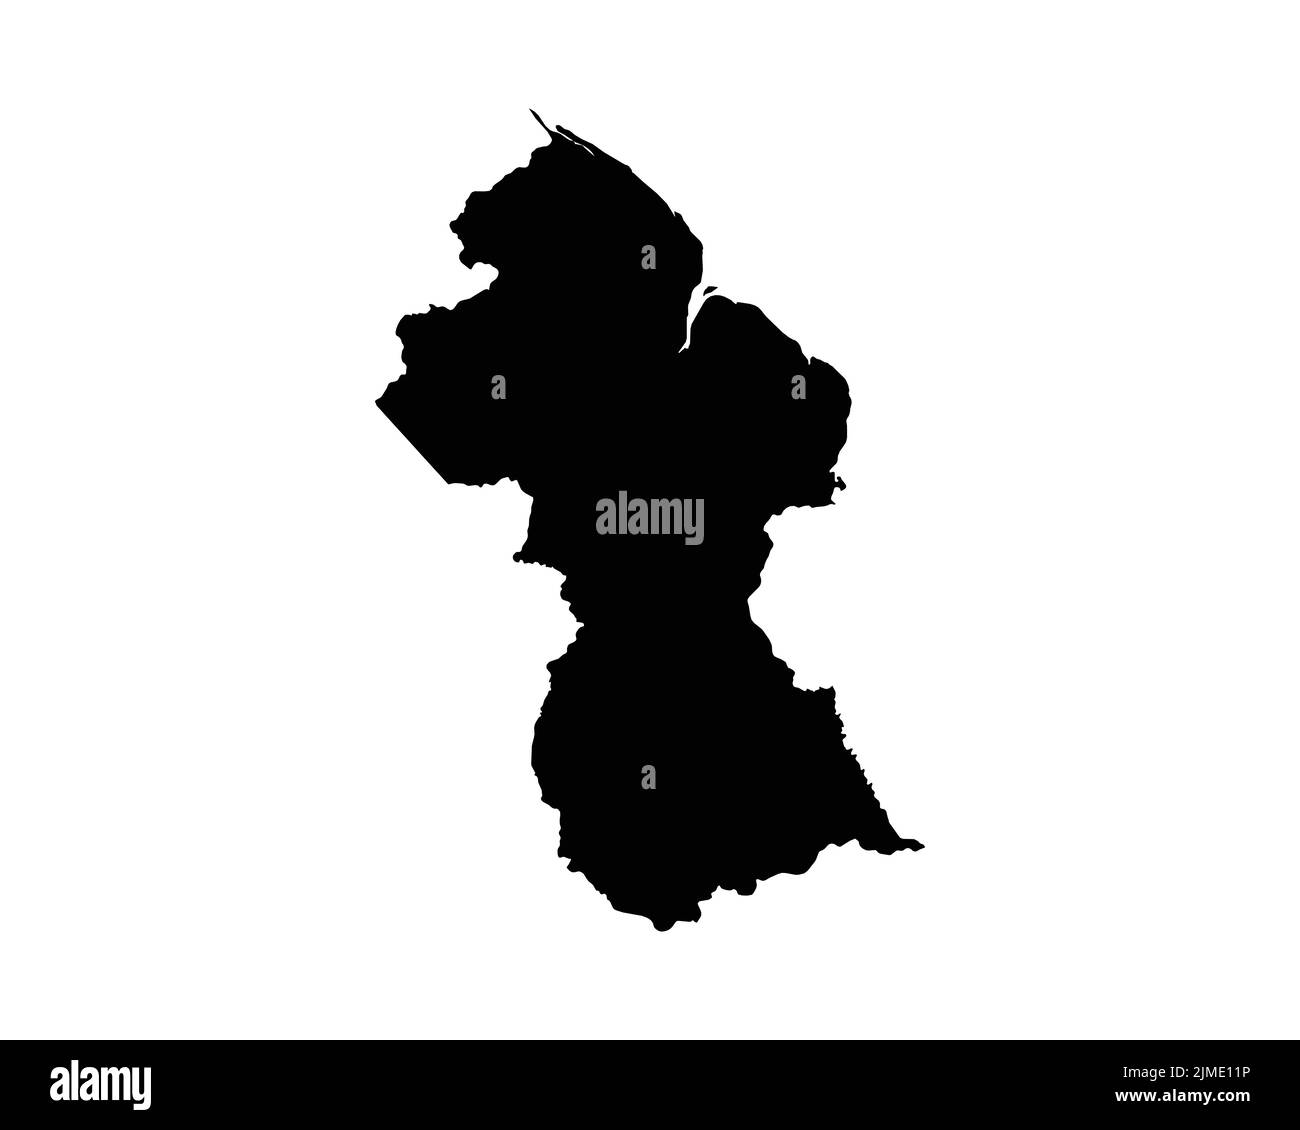 Guyana-Karte. Guyanesische Landkarte. Schwarz-Weiß National Nation Gliederung Geographie Grenze Grenzform Territorium Vektor Illustration EPS Clipart Stock Vektor